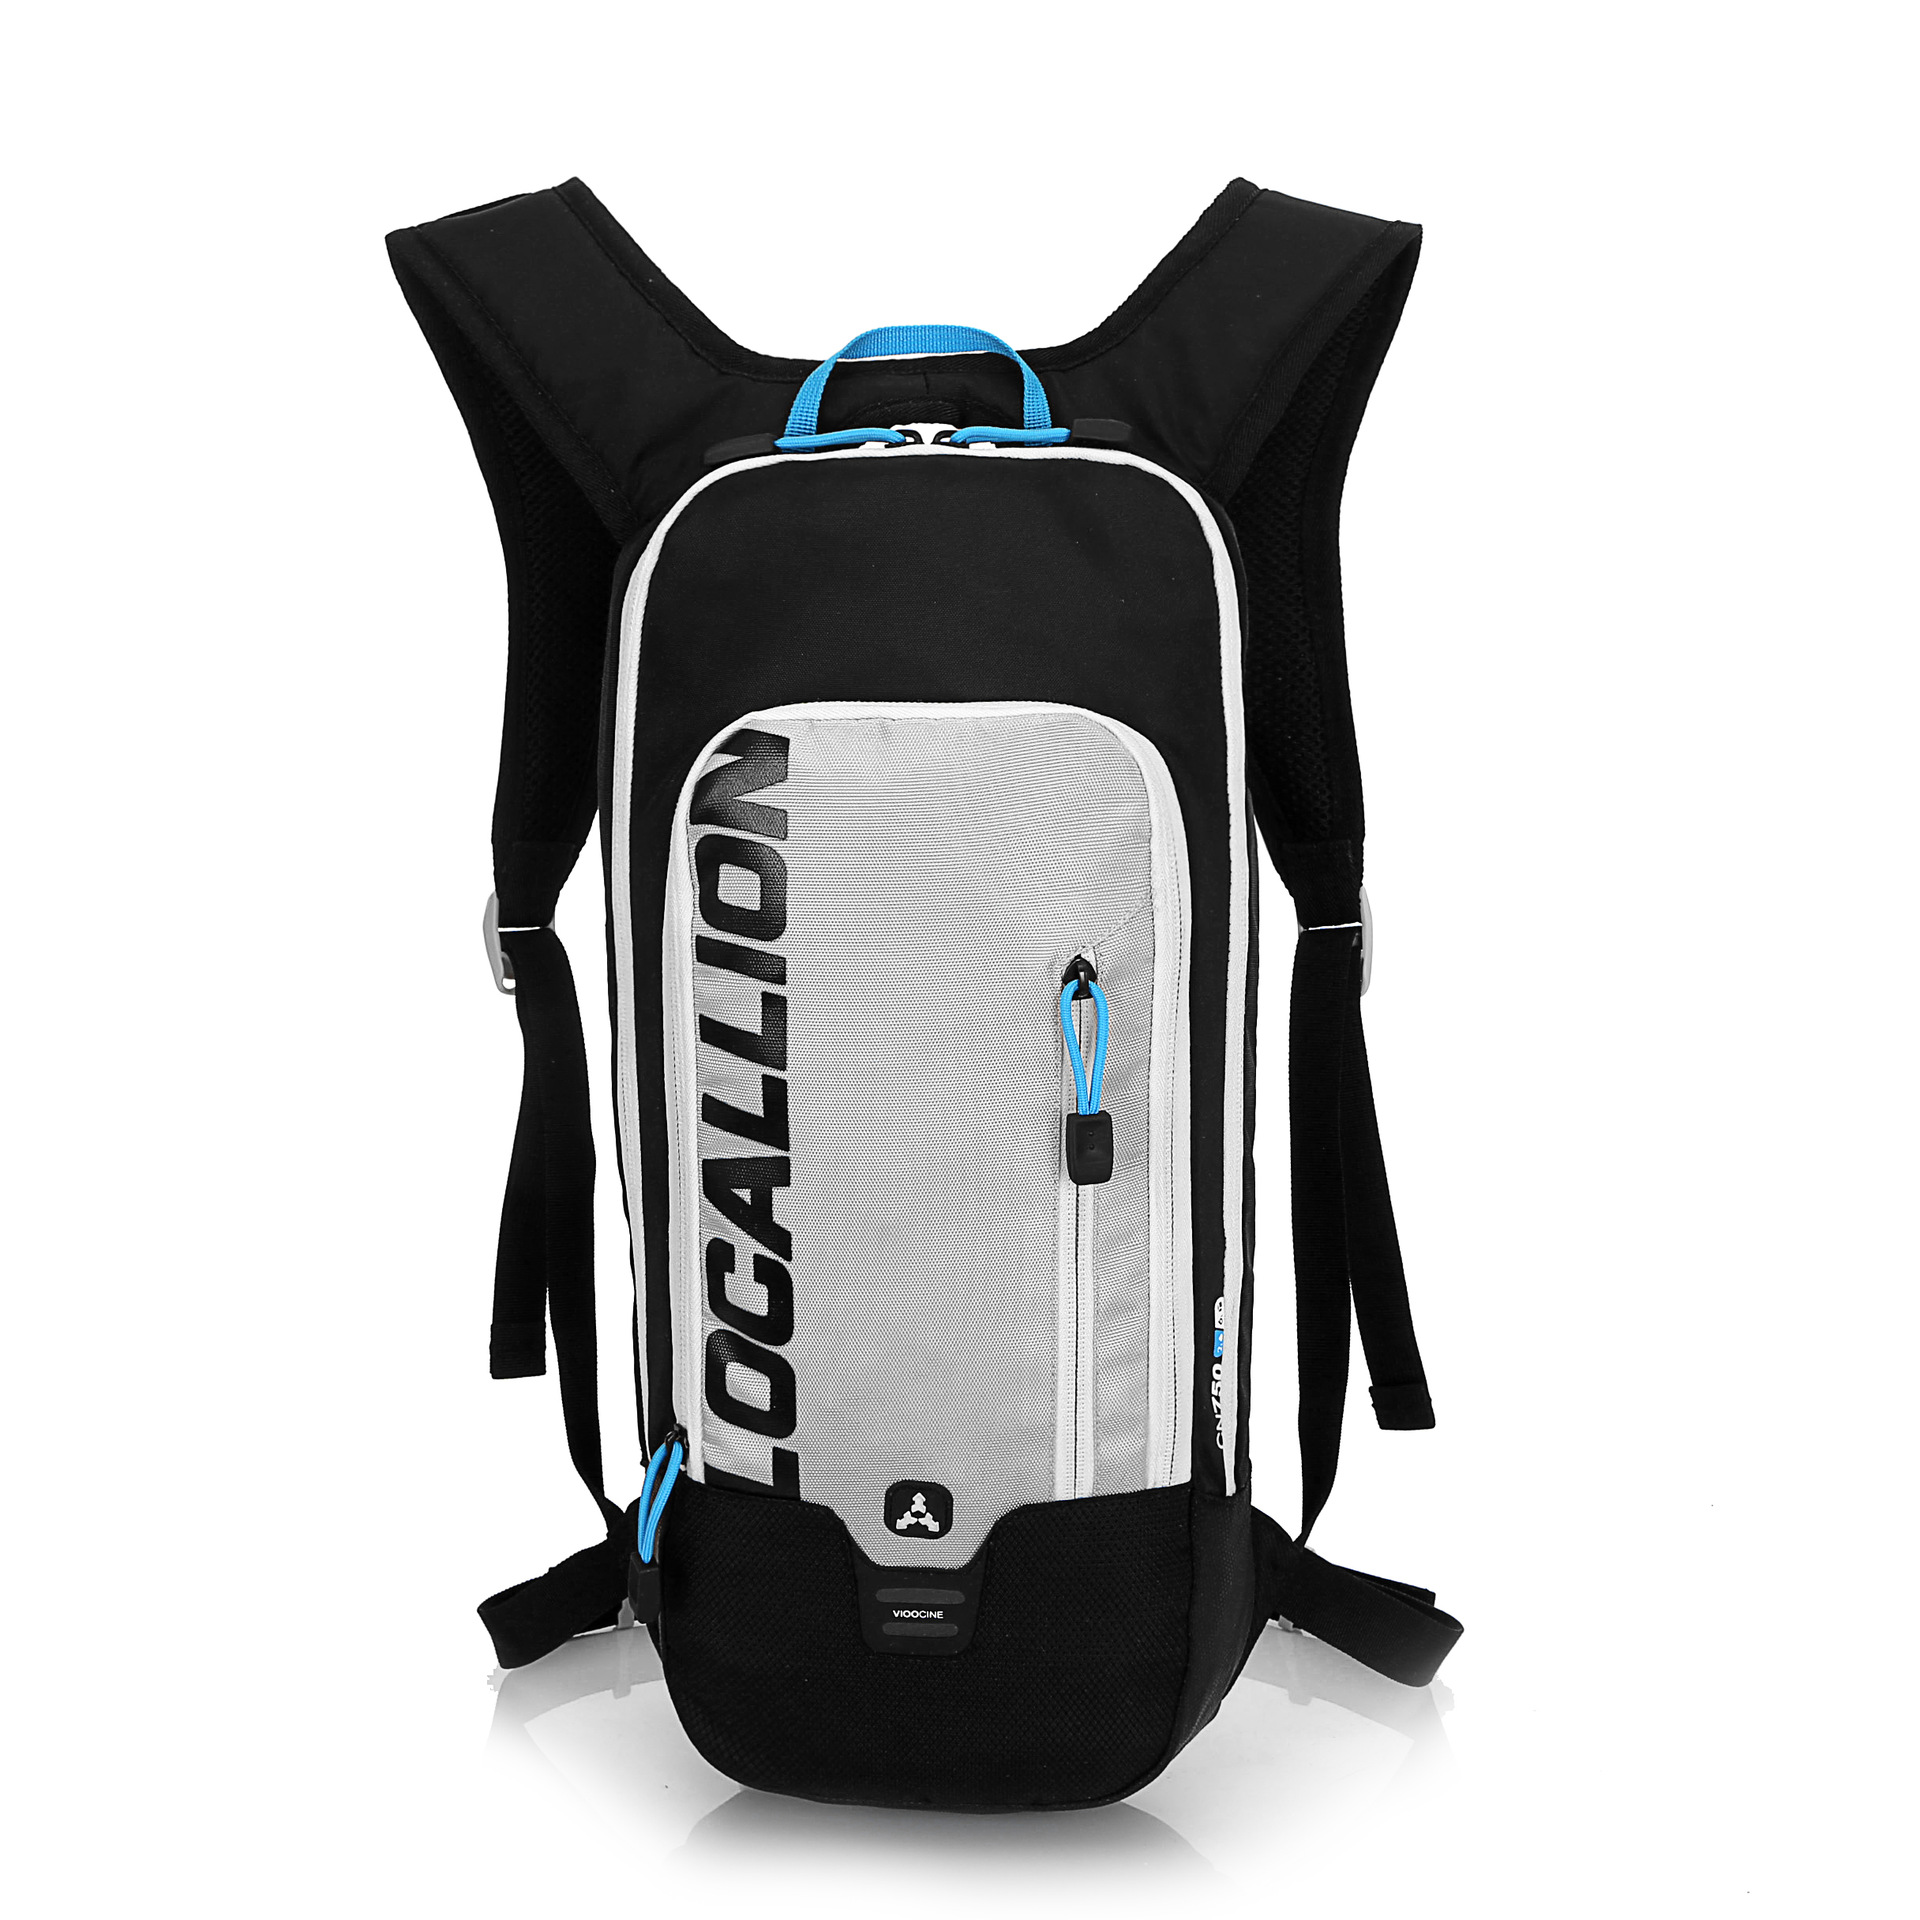 Рюкзак Outdoor locallion на 15 л. Рюкзак гидратор TOPSPEED. Питьевая система для рюкзака. Рюкзак для бега и велоспорта. Питьевой рюкзак